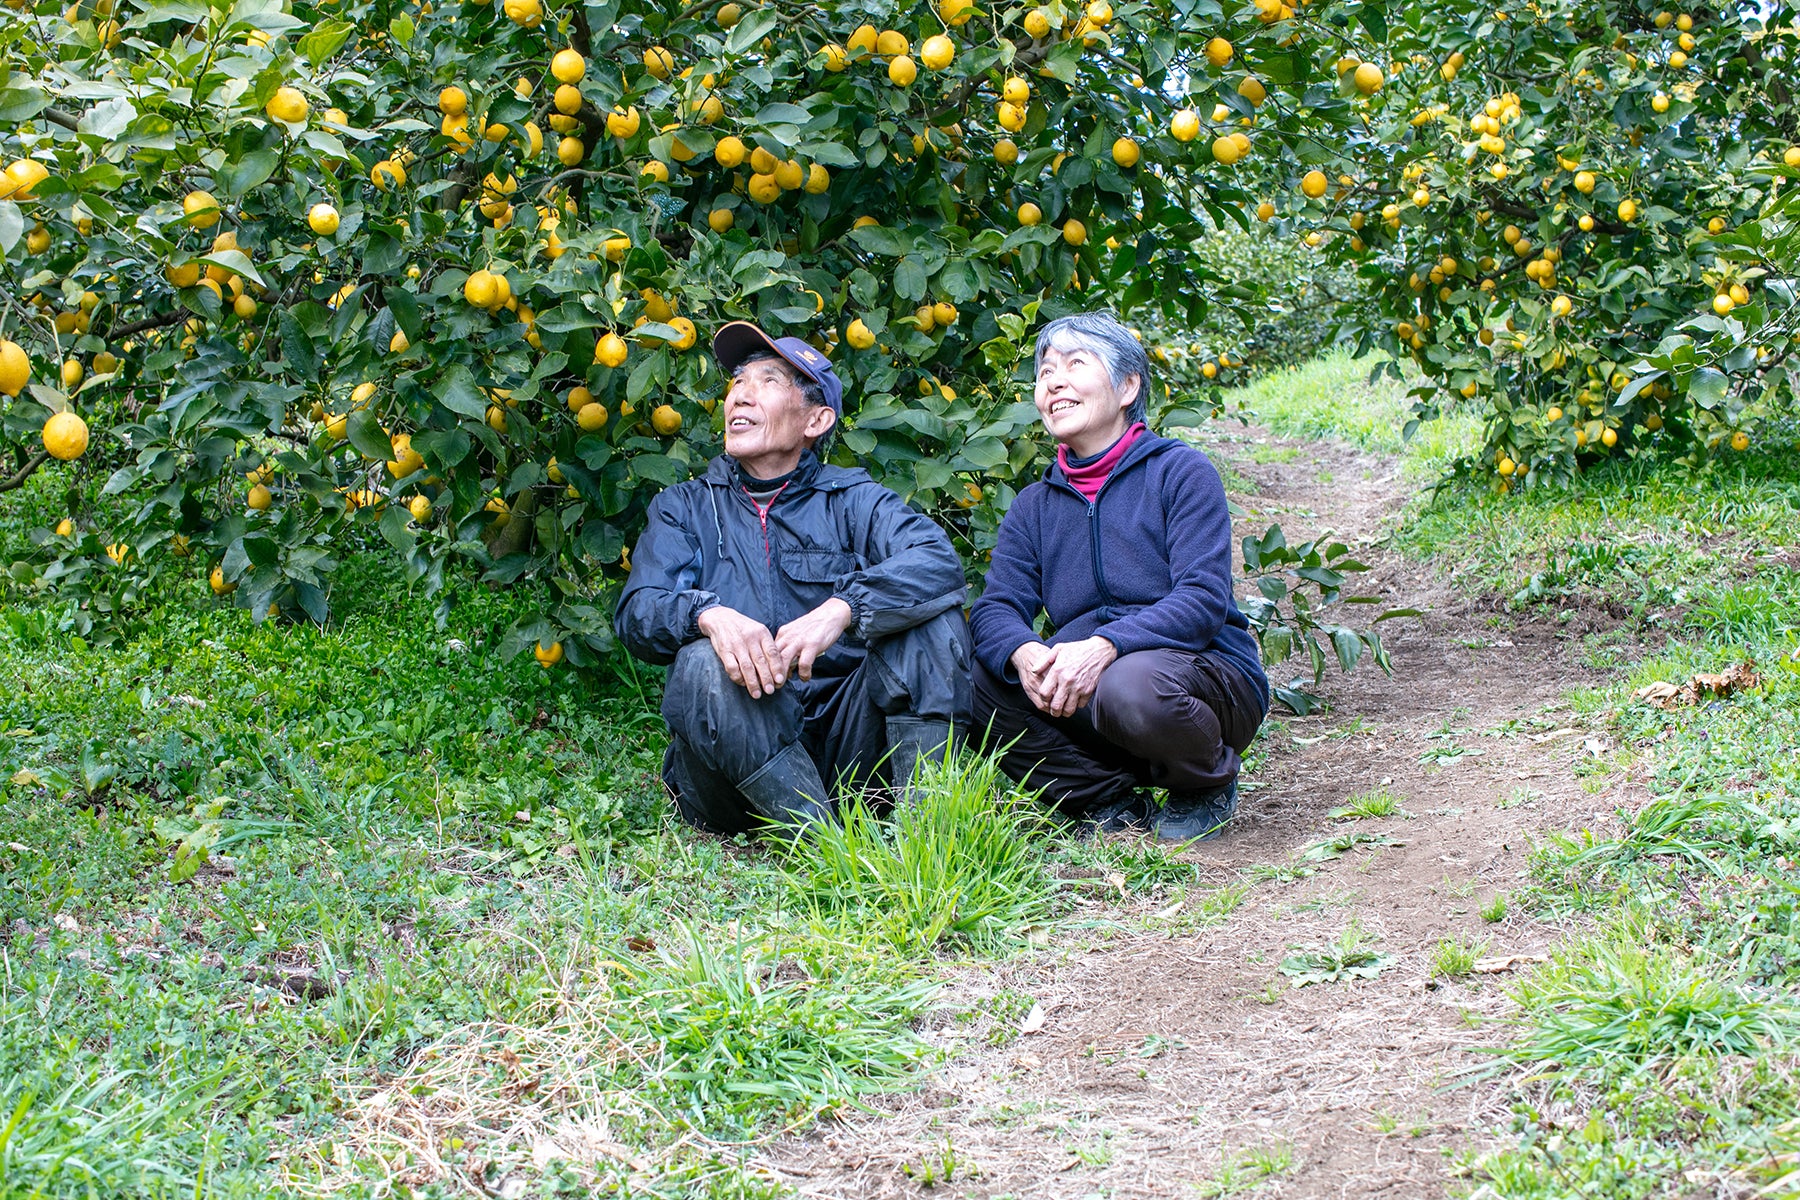 【神奈川県／レモン（有機JAS）】レモンの森から、採れたてをお届けします /  Delivered fresh from the lemon forest (Organic JAS)